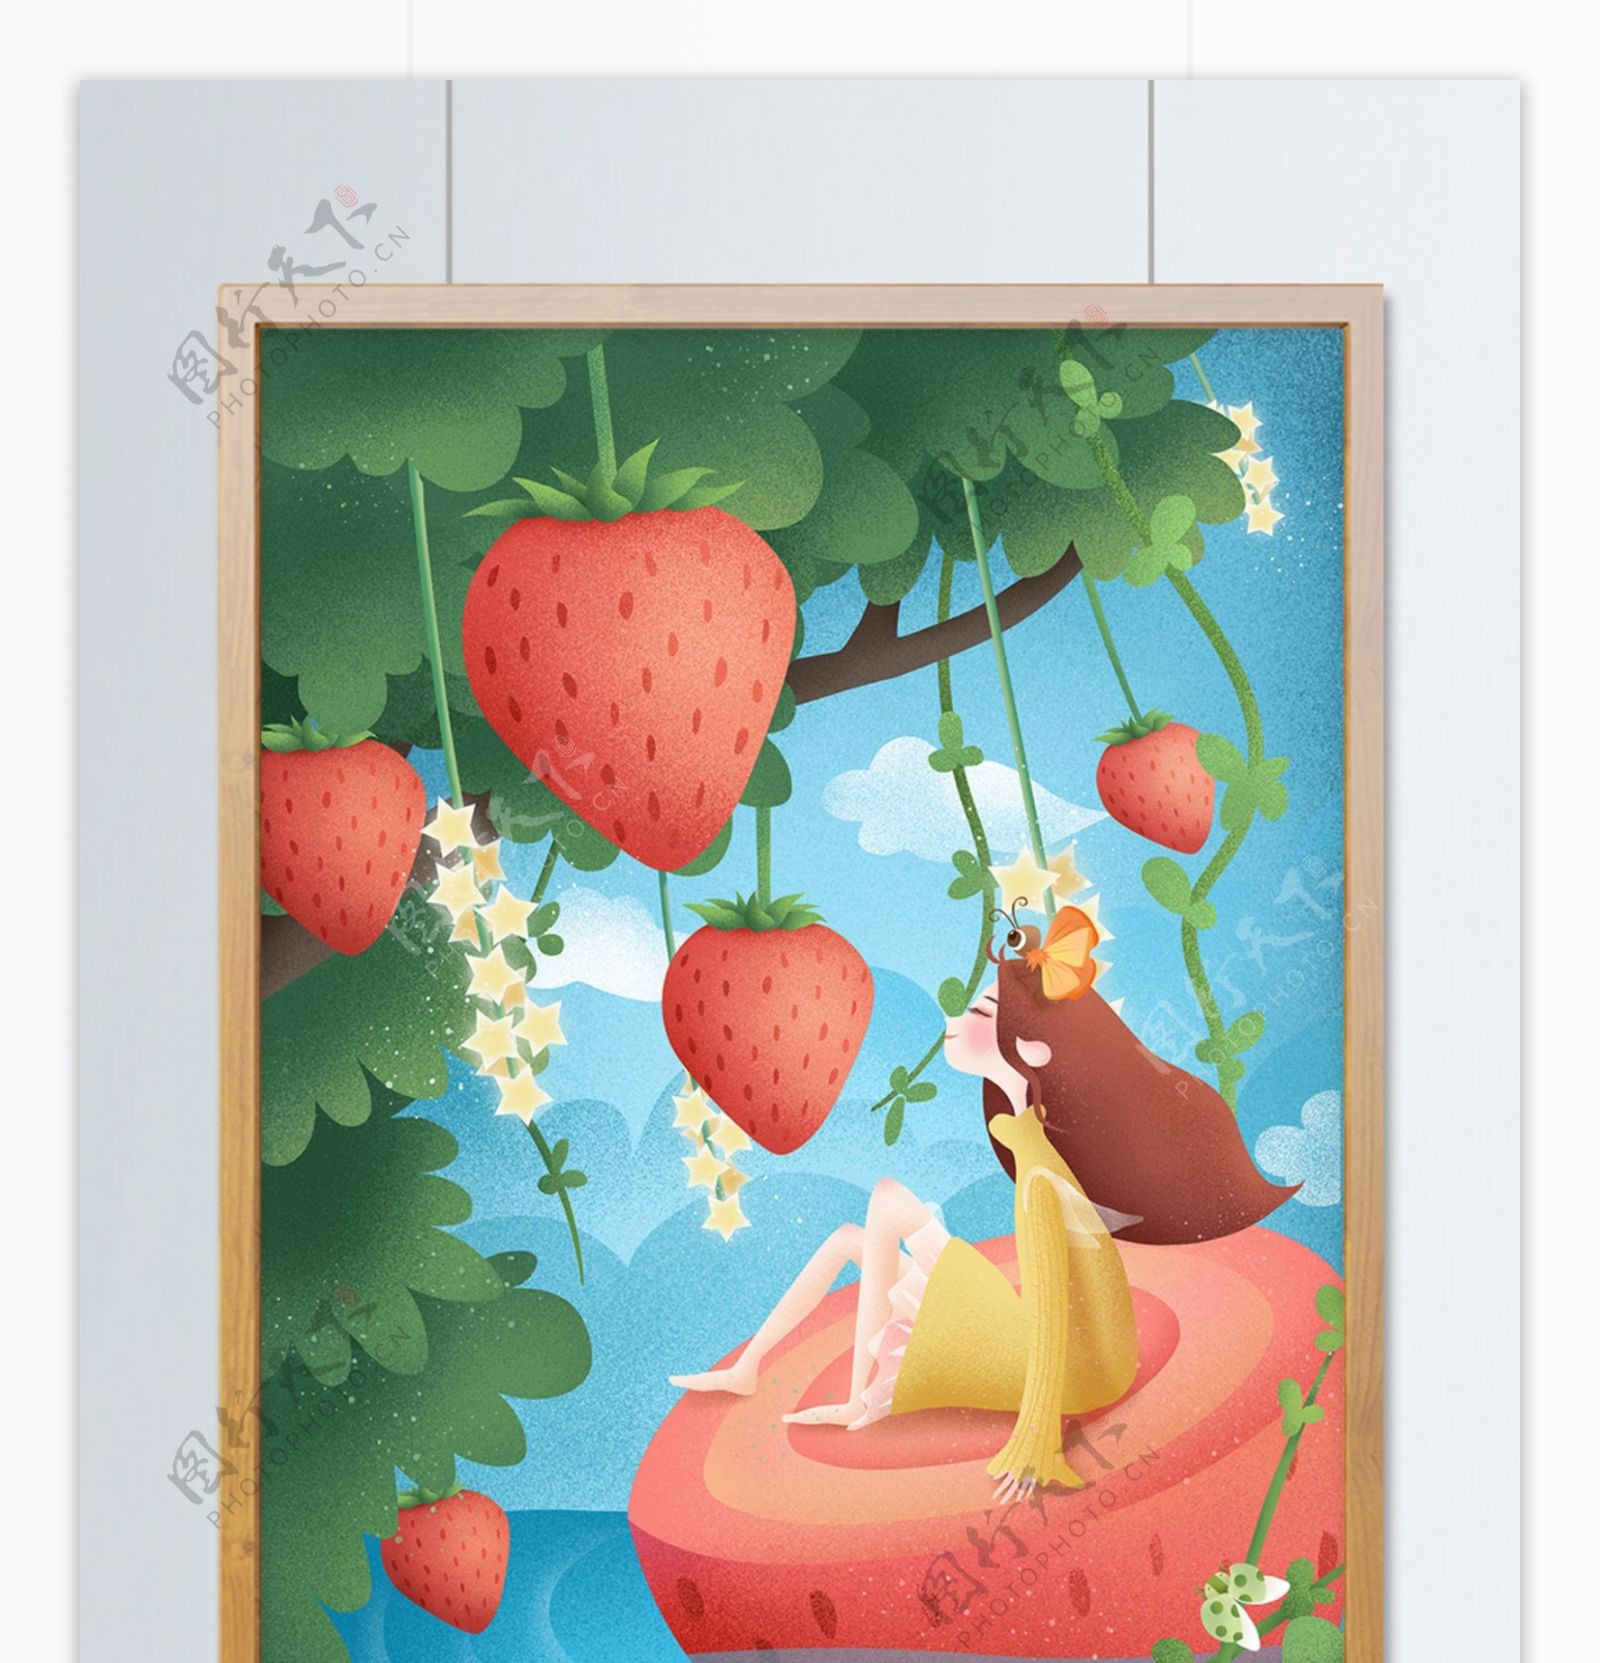 原创手绘插画创意水果之草莓